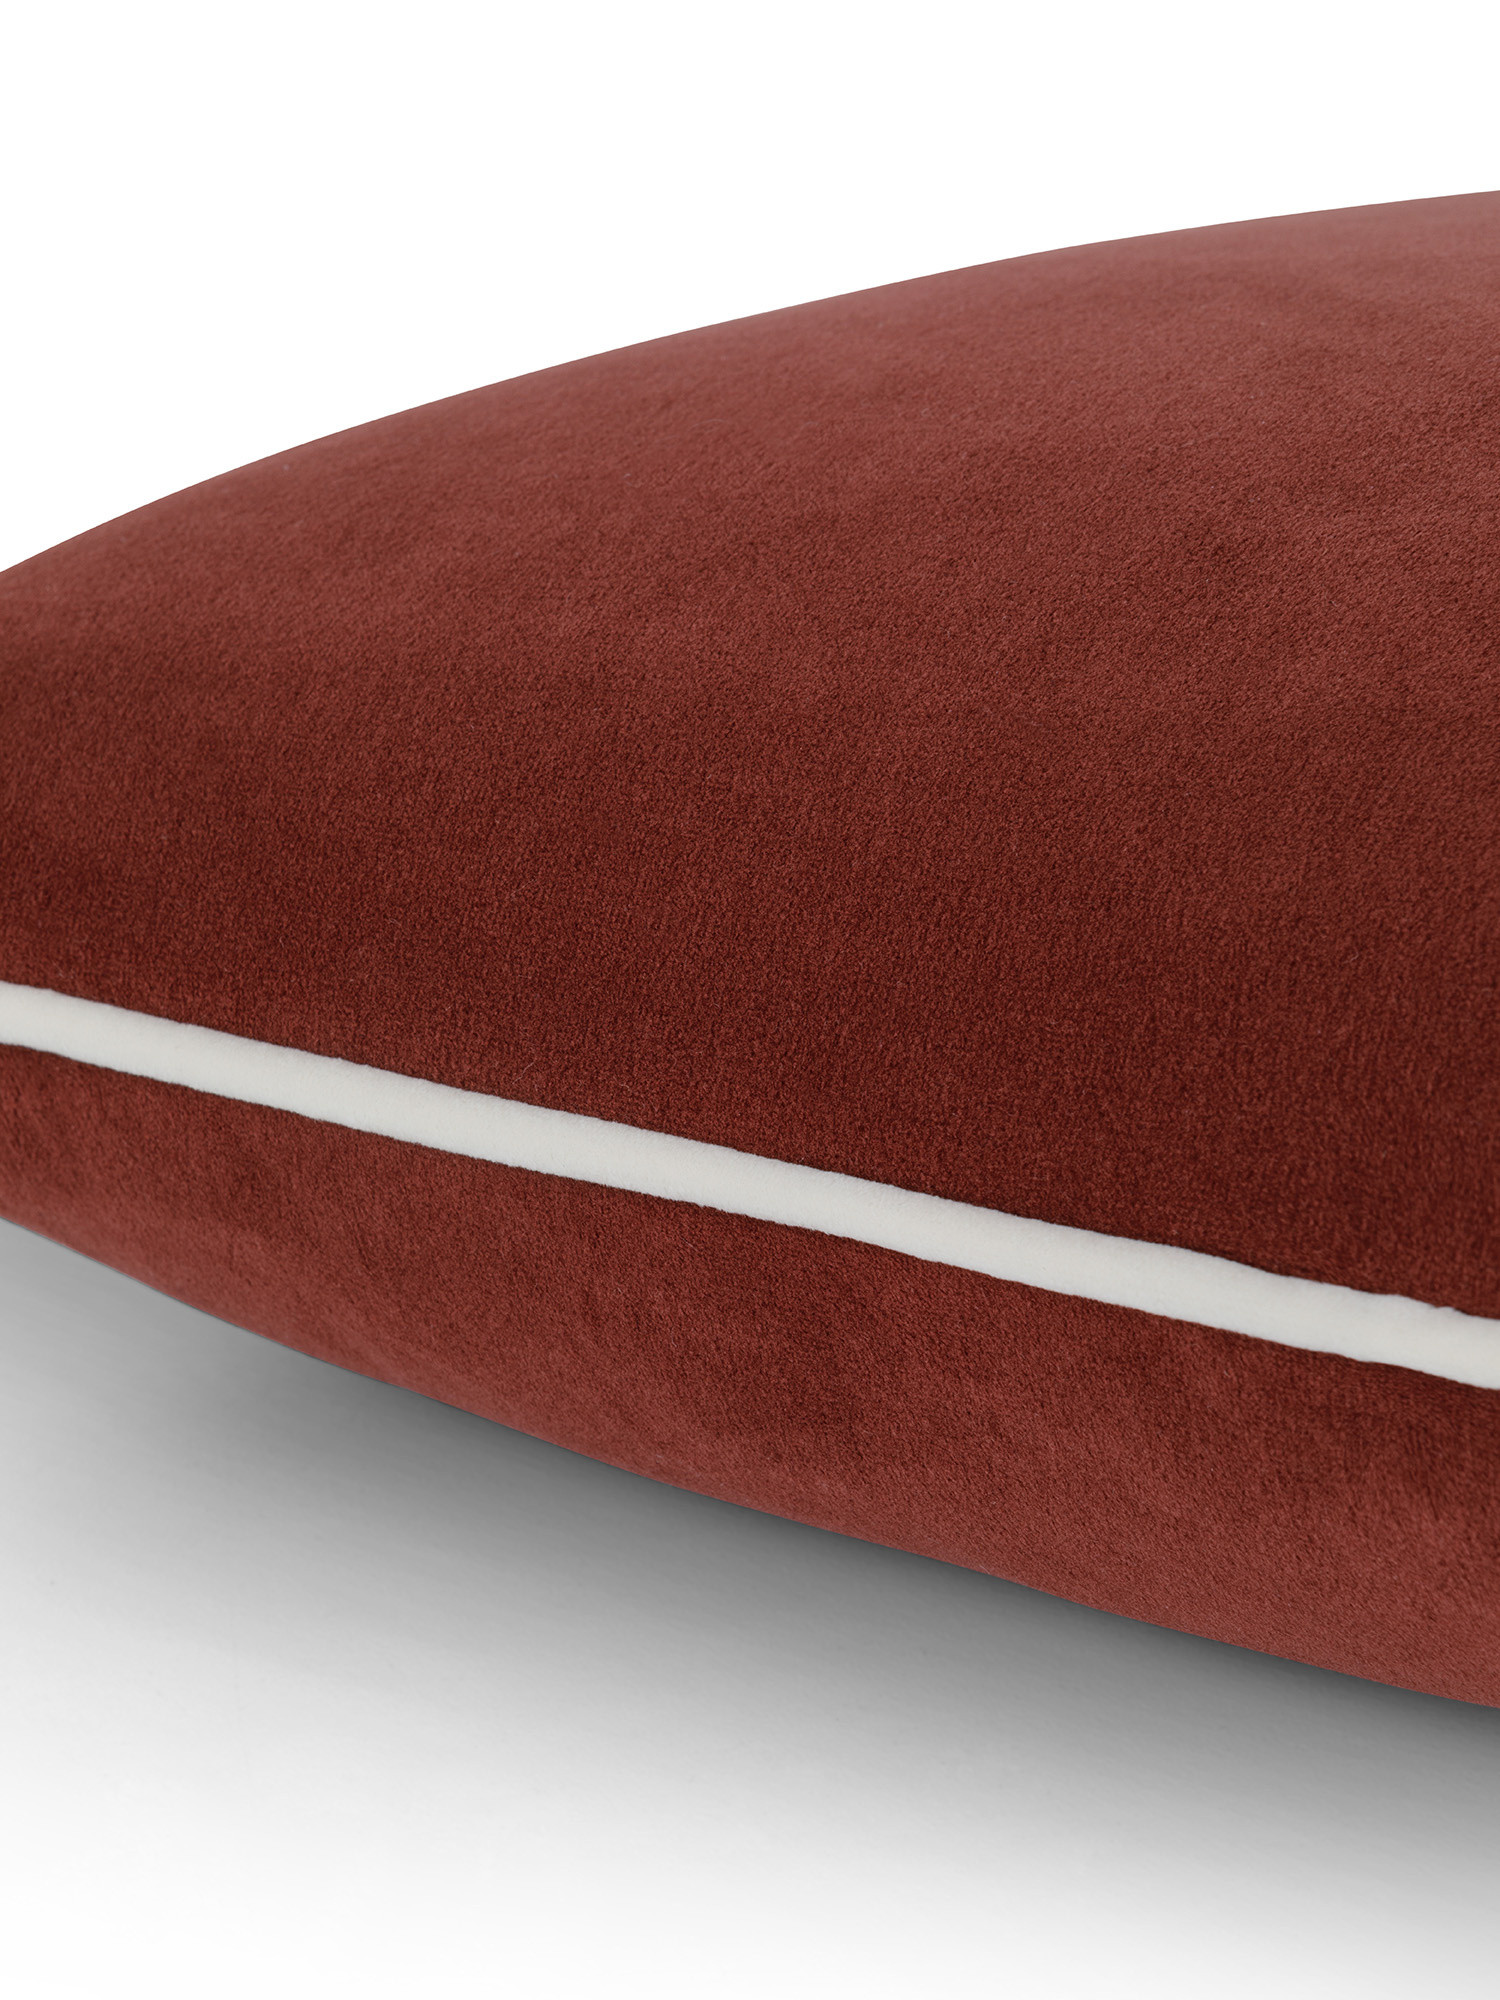 Cuscino in velluto con piping applicato sul bordo 45x45 cm, Marrone, large image number 2